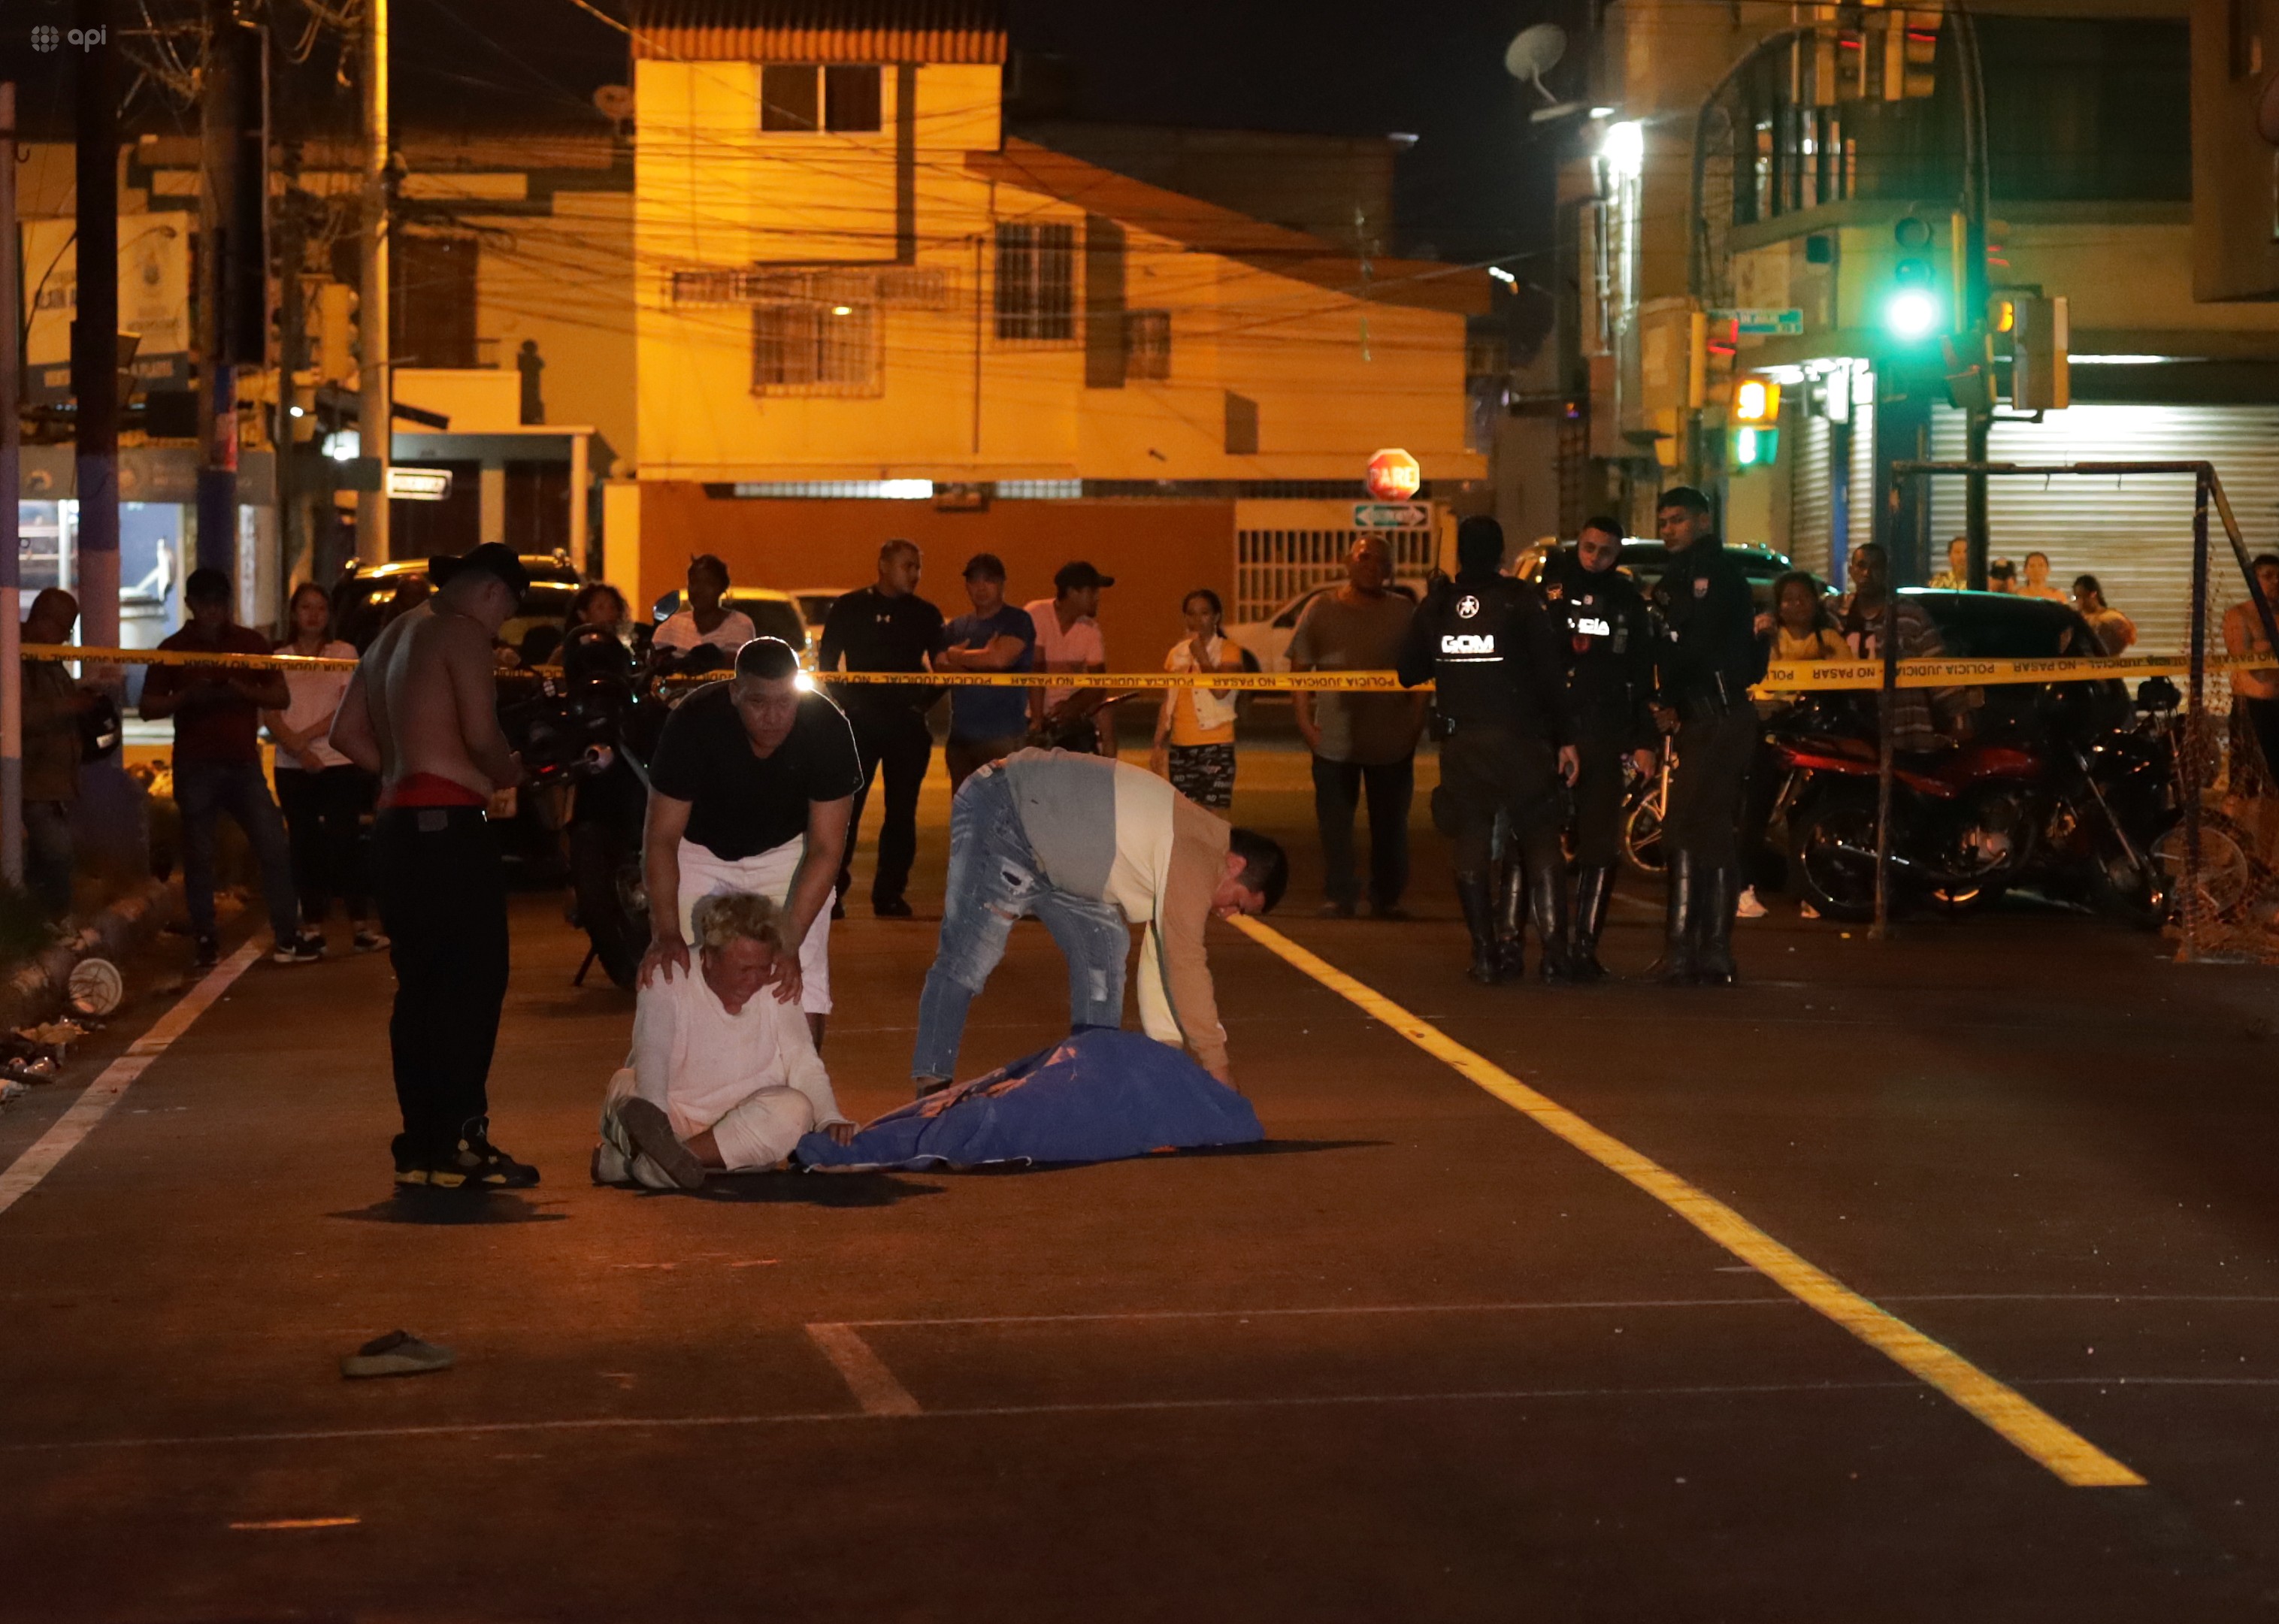 el promedio diario de muertes violentas es de 21 en el Ecuador, según las autoridades.